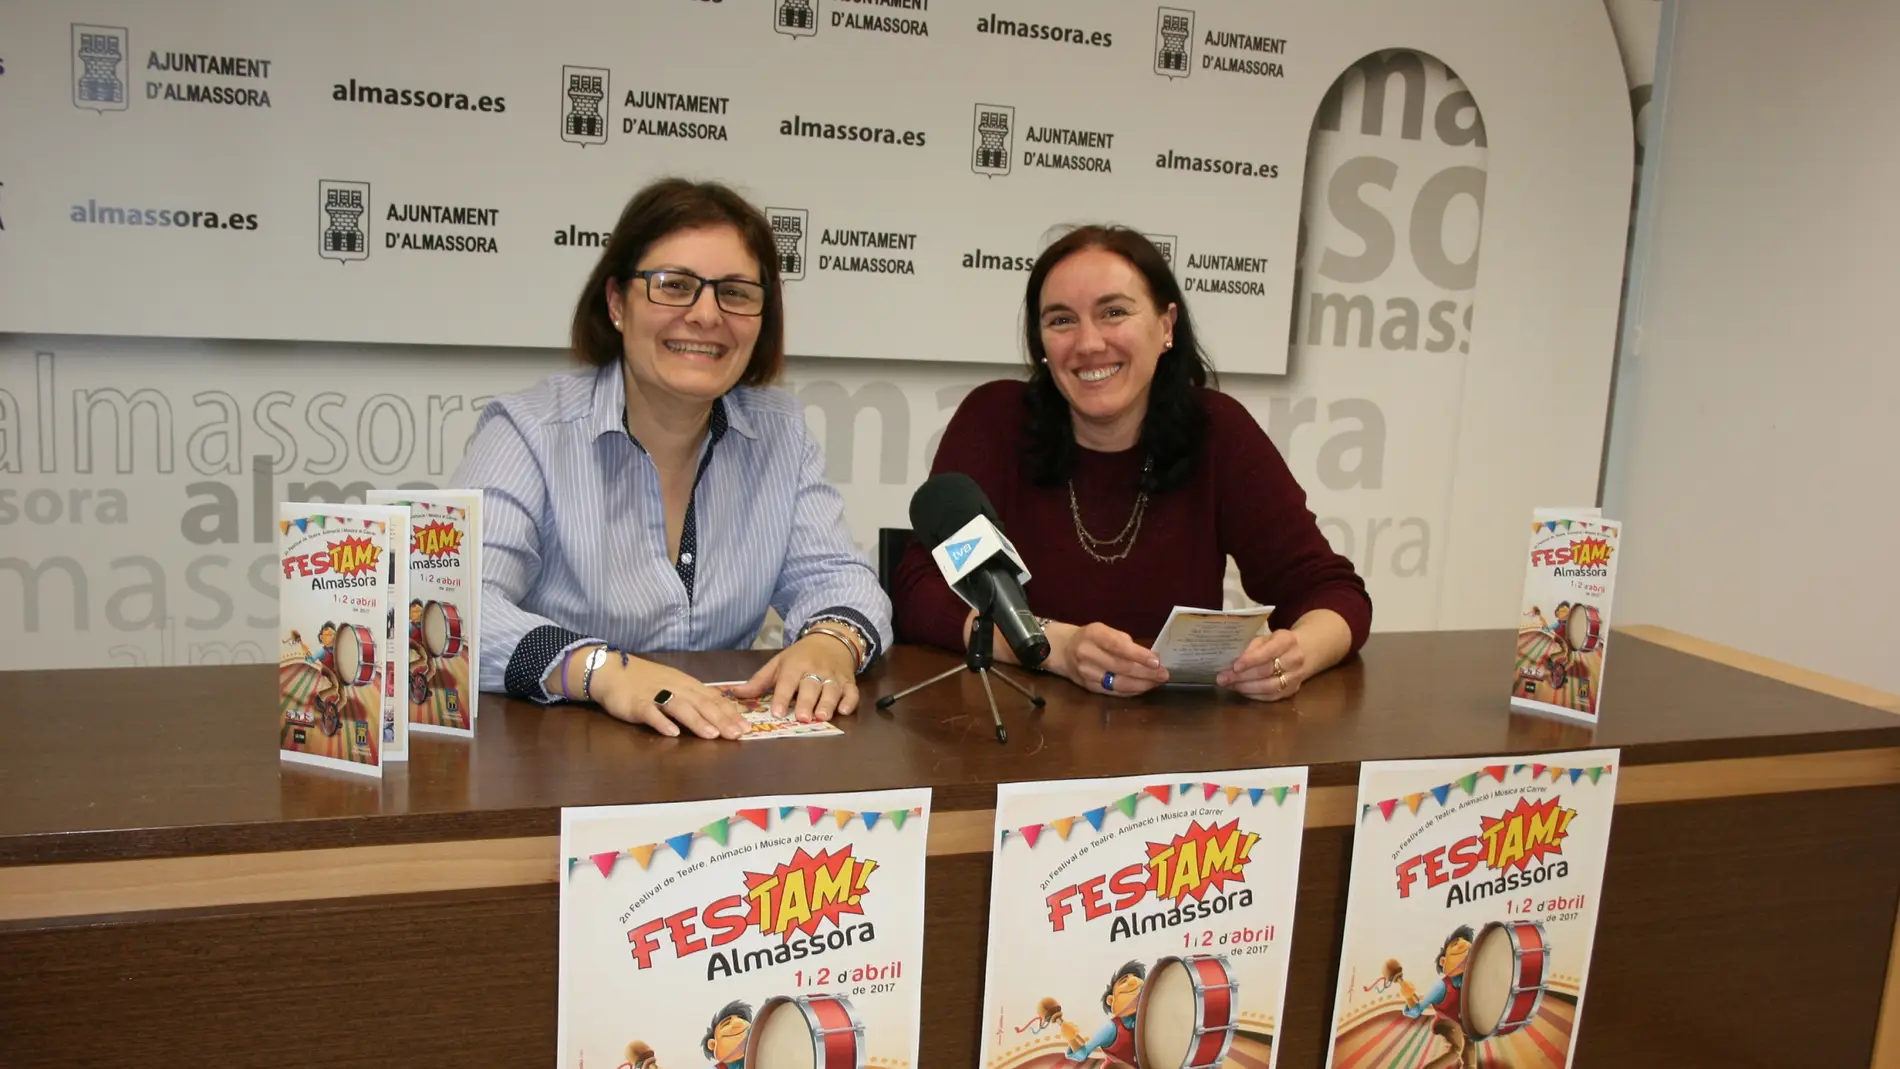 La concejala de Cultura, Isladis Falcó, ha presentado el II Festival de Teatre, Animació i Música al Carrer, FES TAM!